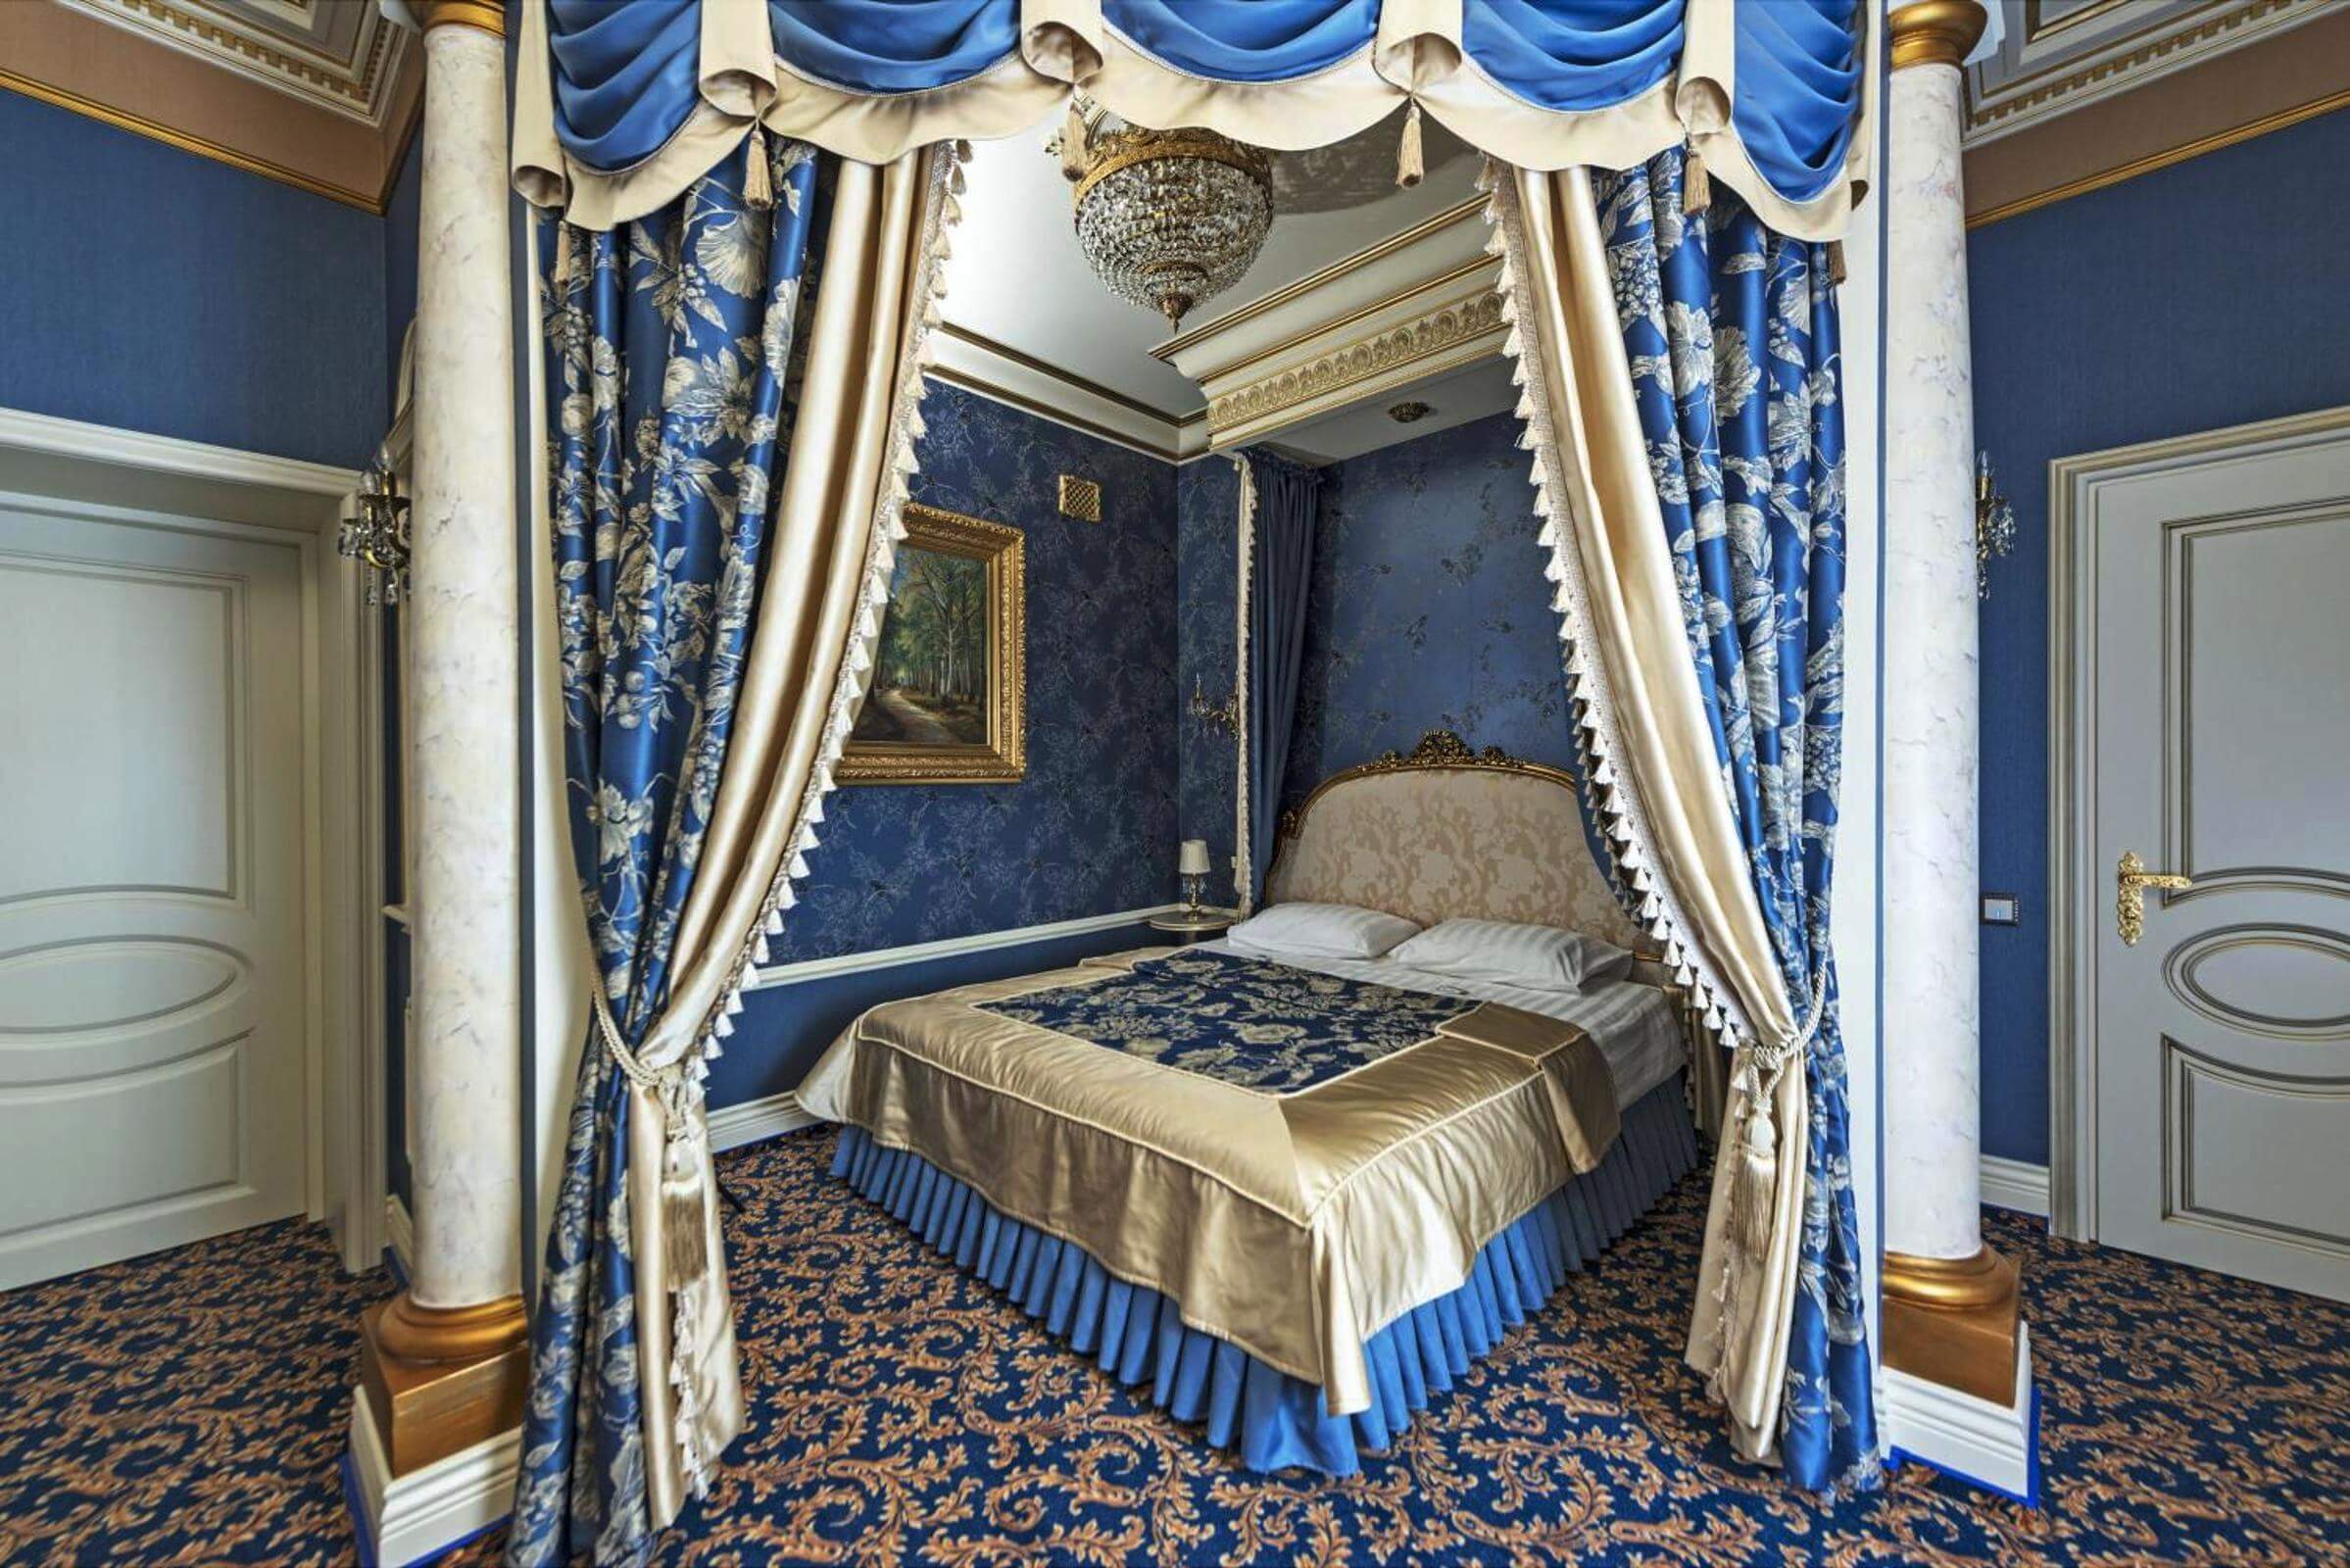 Бутик-отель «Тургенев». Интерьер в синих цветах.